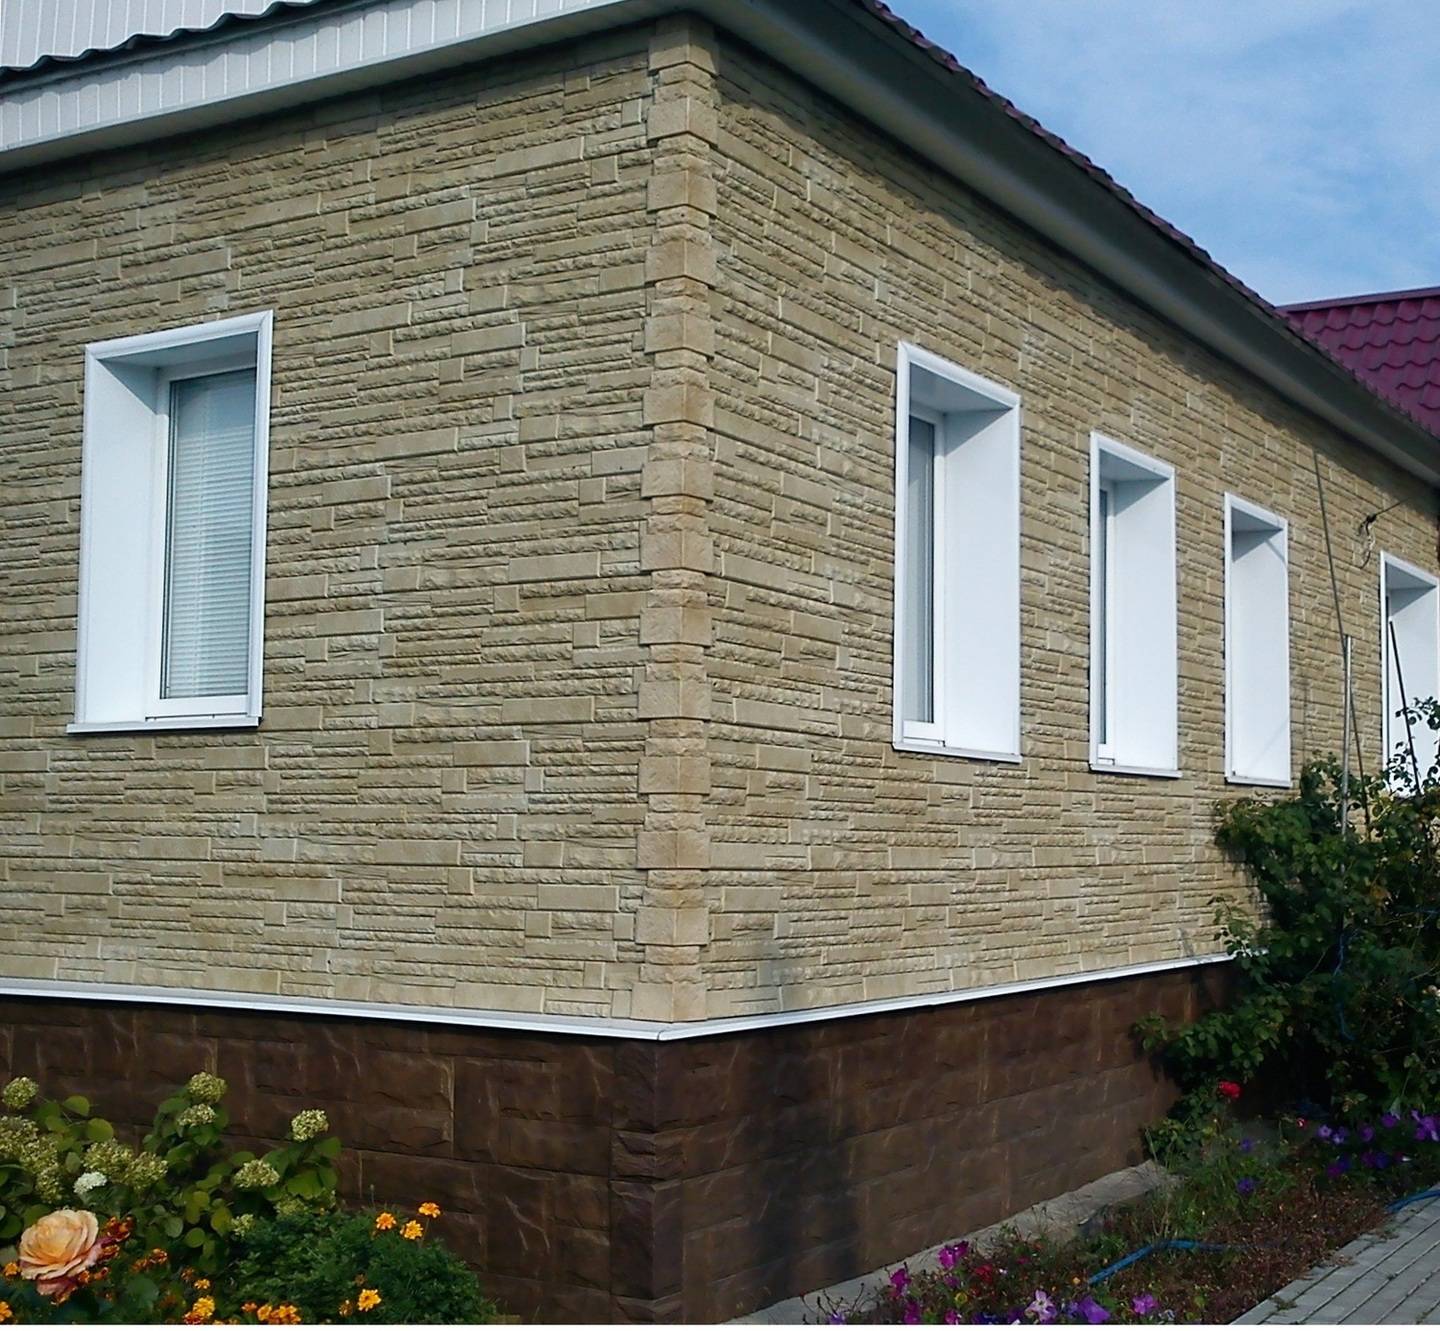 Технология отделки дома фасадными панелями под камень + достоинства и недостатки декоративных панелей из искусственного камня